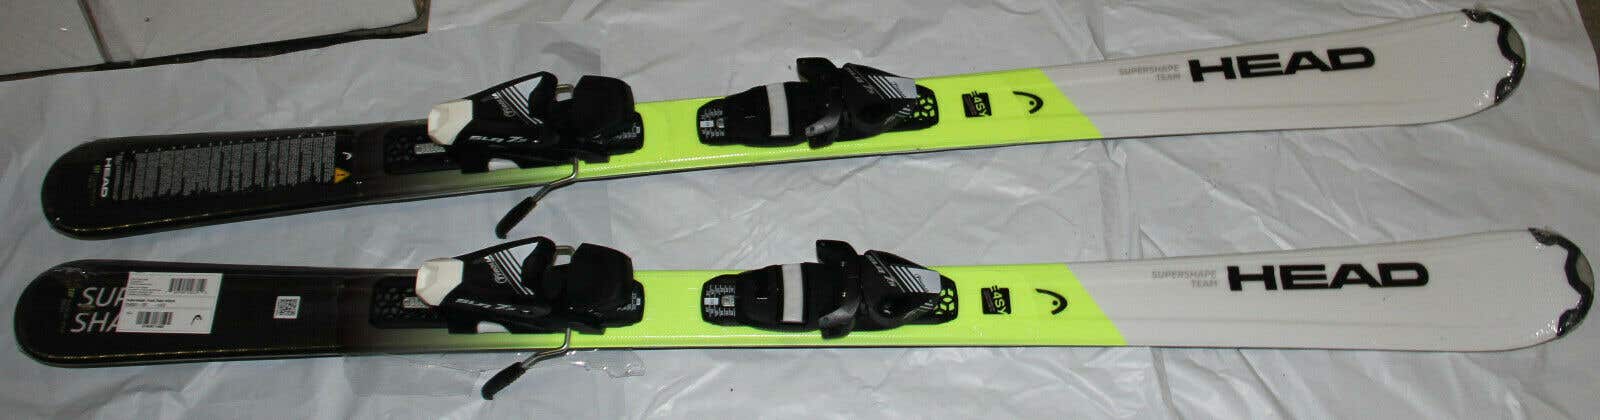 NEW HEAD HEAD Supershape team 4Easy Junior skis 137cm +Tyrolia adjustable bindings NEW